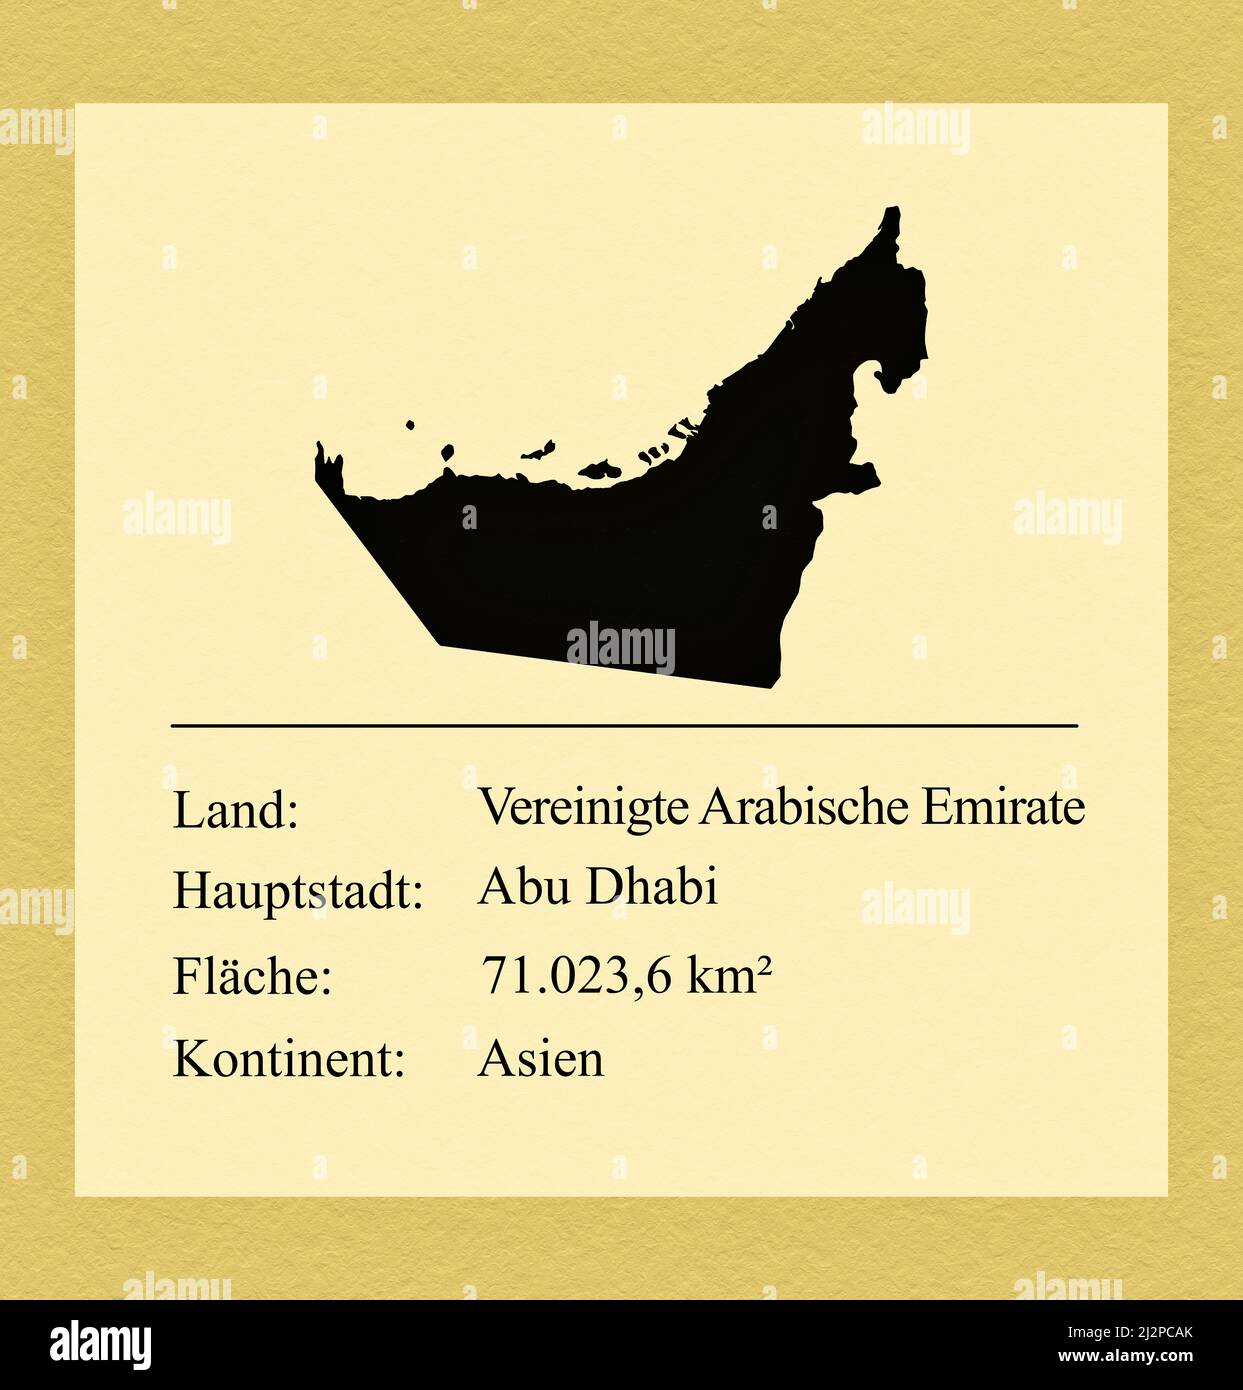 Umrisse der Vereinigten Arabischen Emirate, darunter ein kleiner Steckbrief mit Ländernamen, Hauptstadt, Fläche und Kontinent Stock Photo